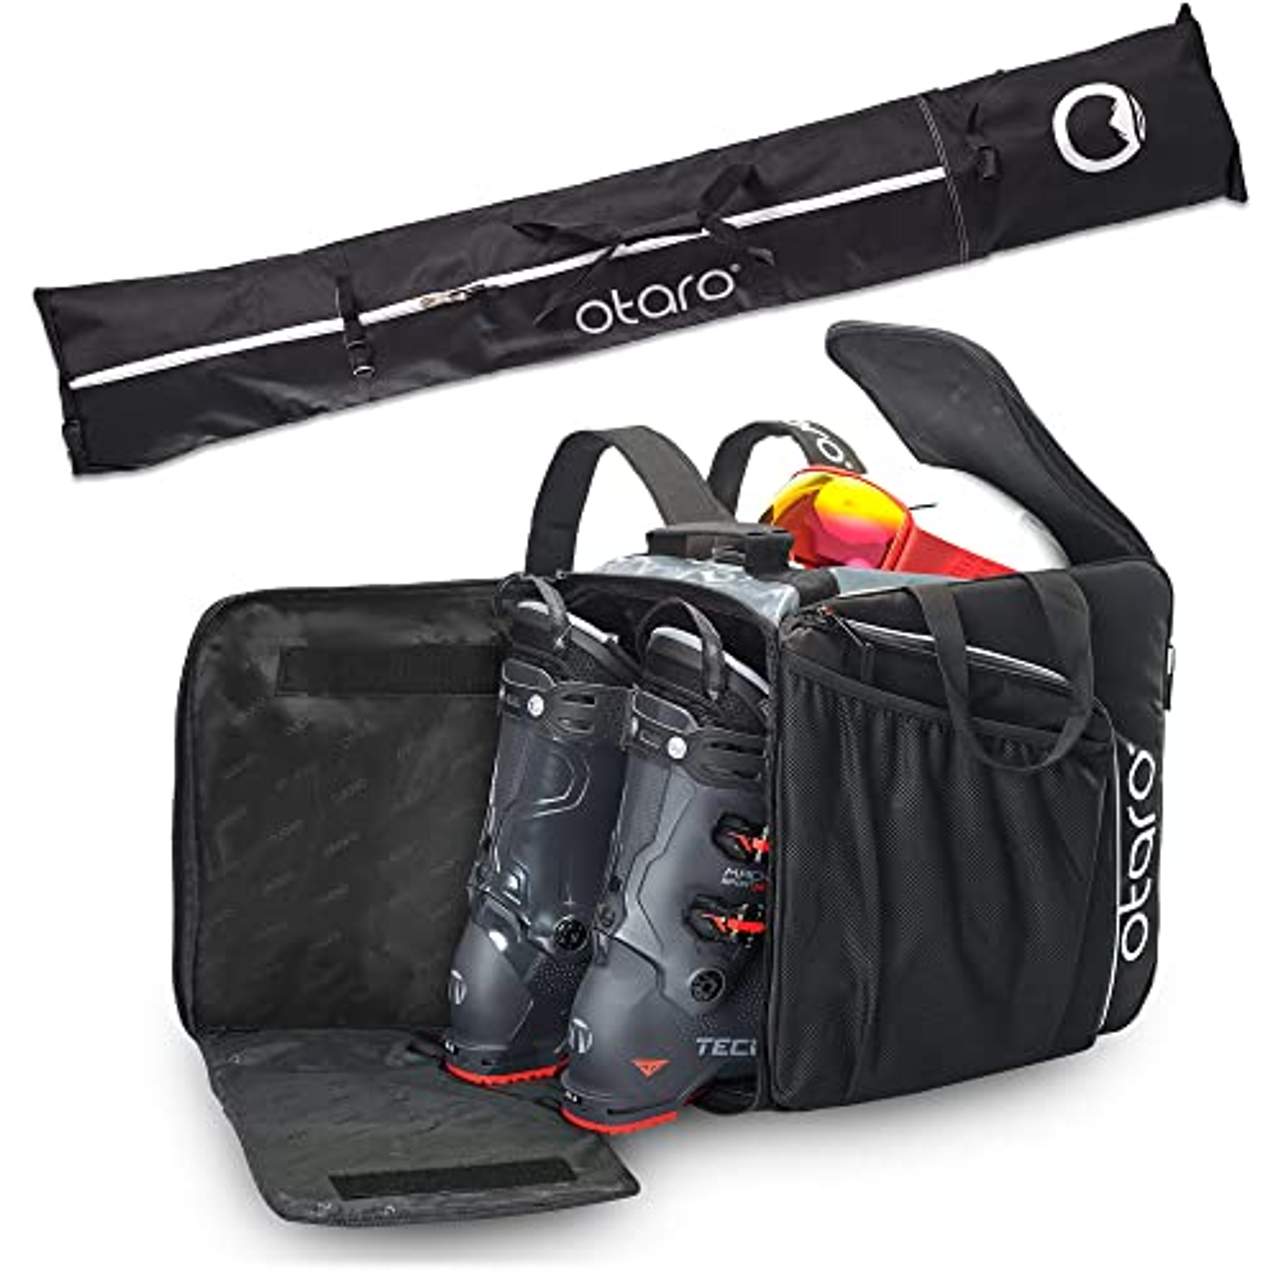 Otaro Premium Skischuhtasche mit Helmfach